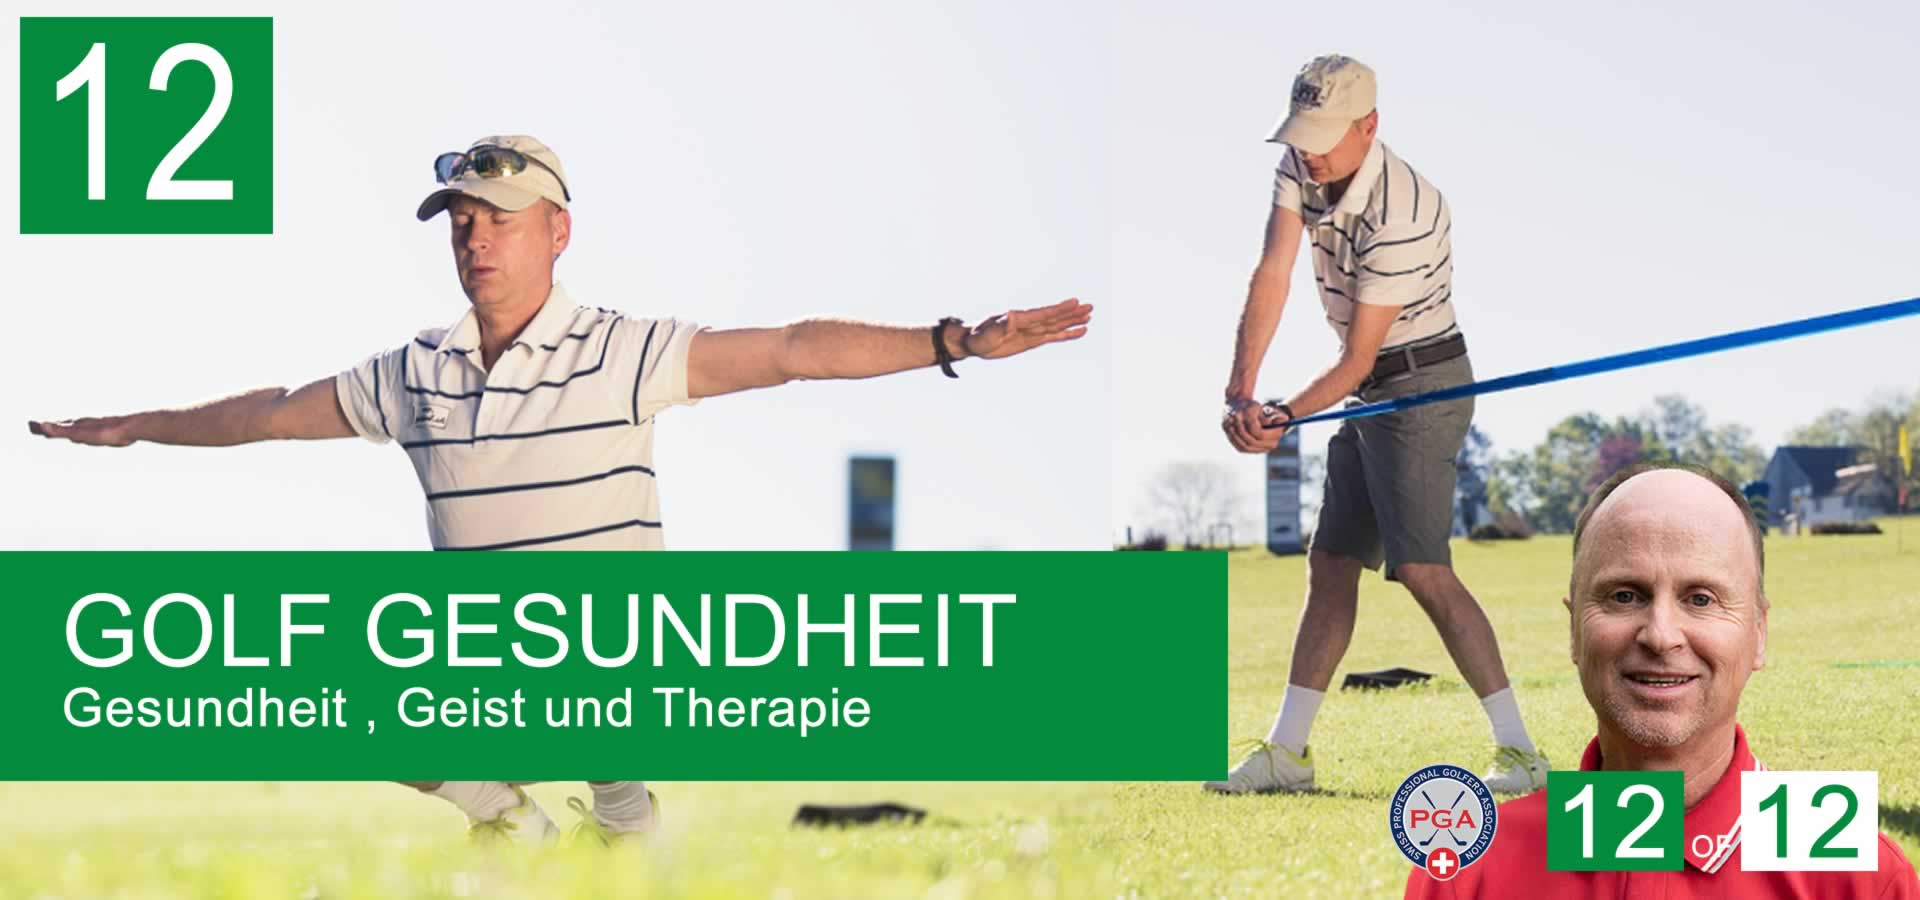 12-Golf-Schlaeger-Reparaturen-Werkstatt-Golfschaft-Golf-Griffe-wechslen-Service-Zuerich-Thierry-Rombaldi-Golfschool-schweiz